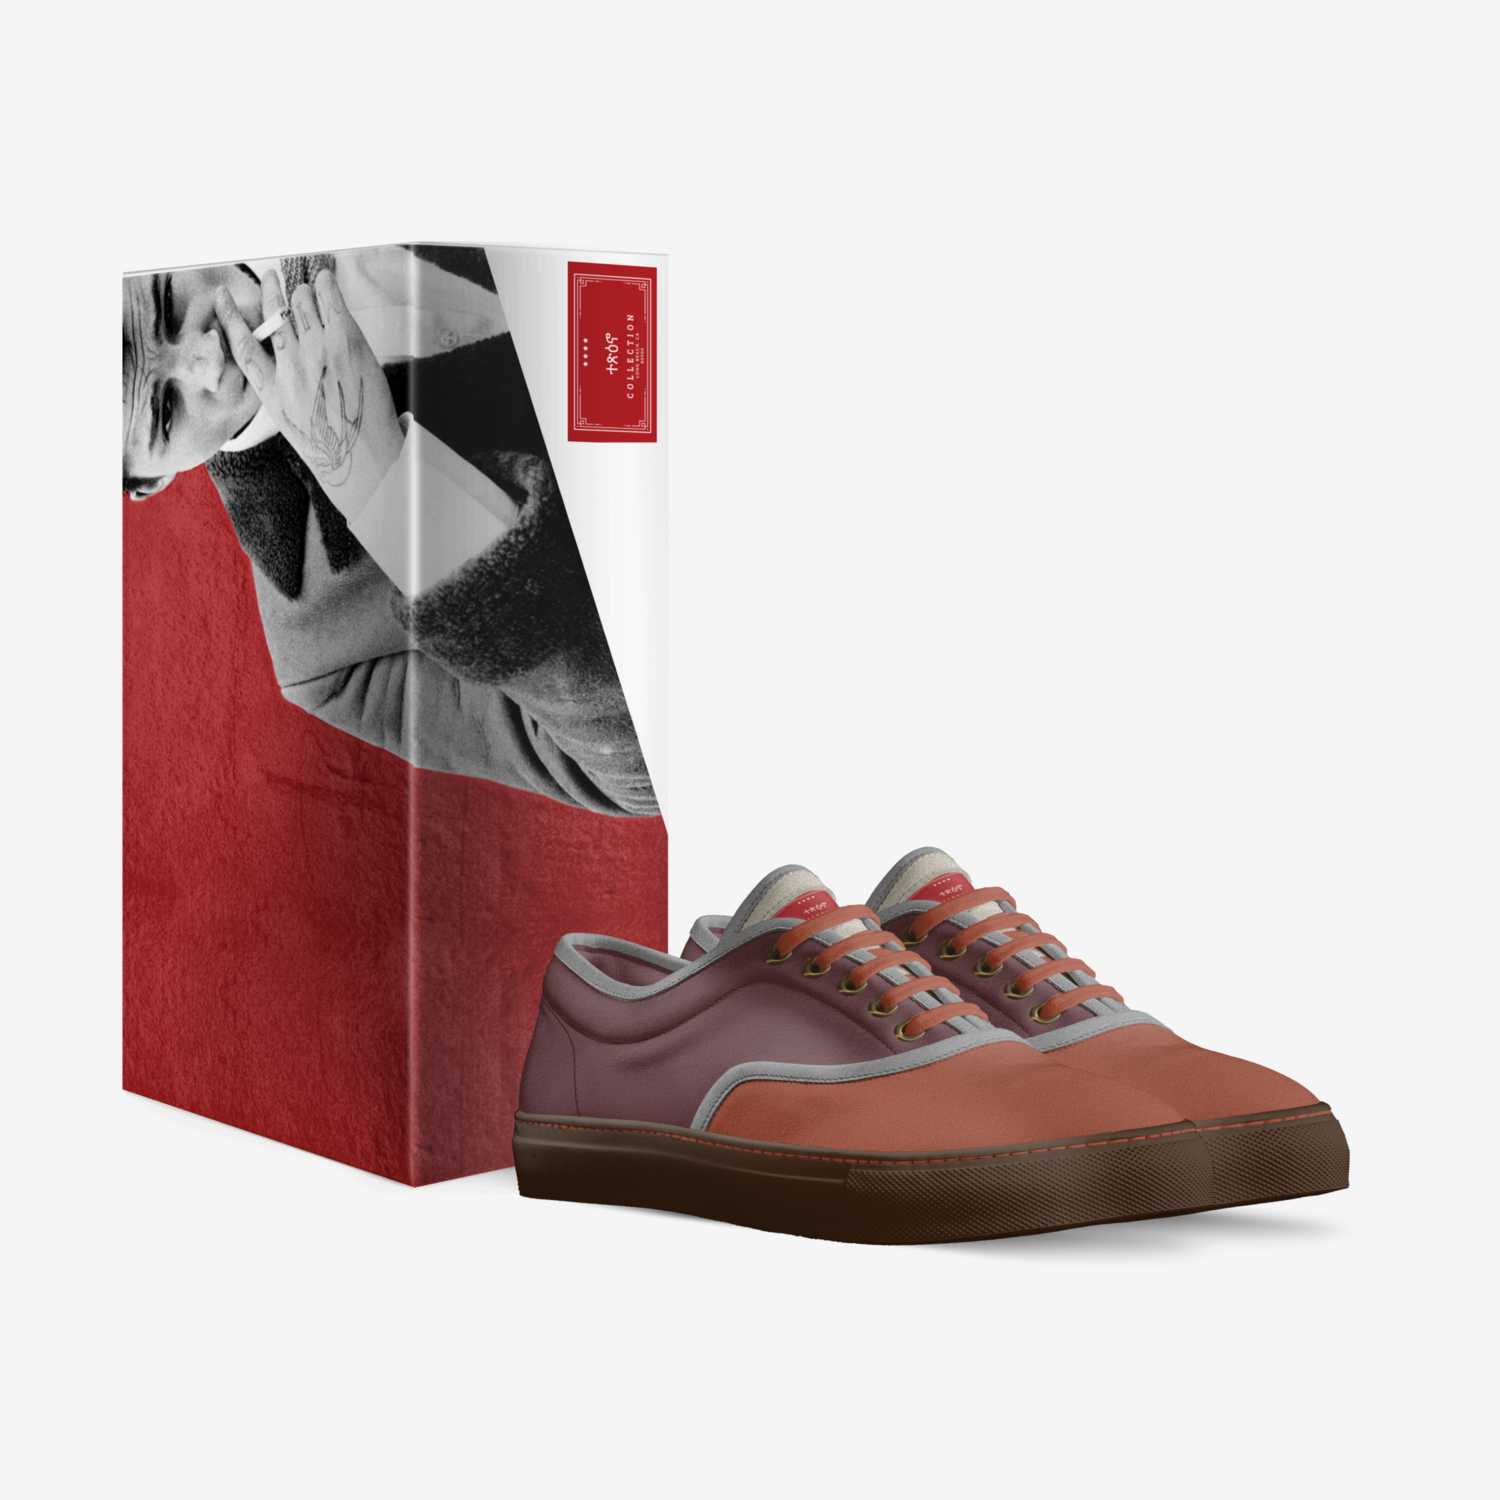 ተጽዕኖ custom made in Italy shoes by Frankie Free | Box view